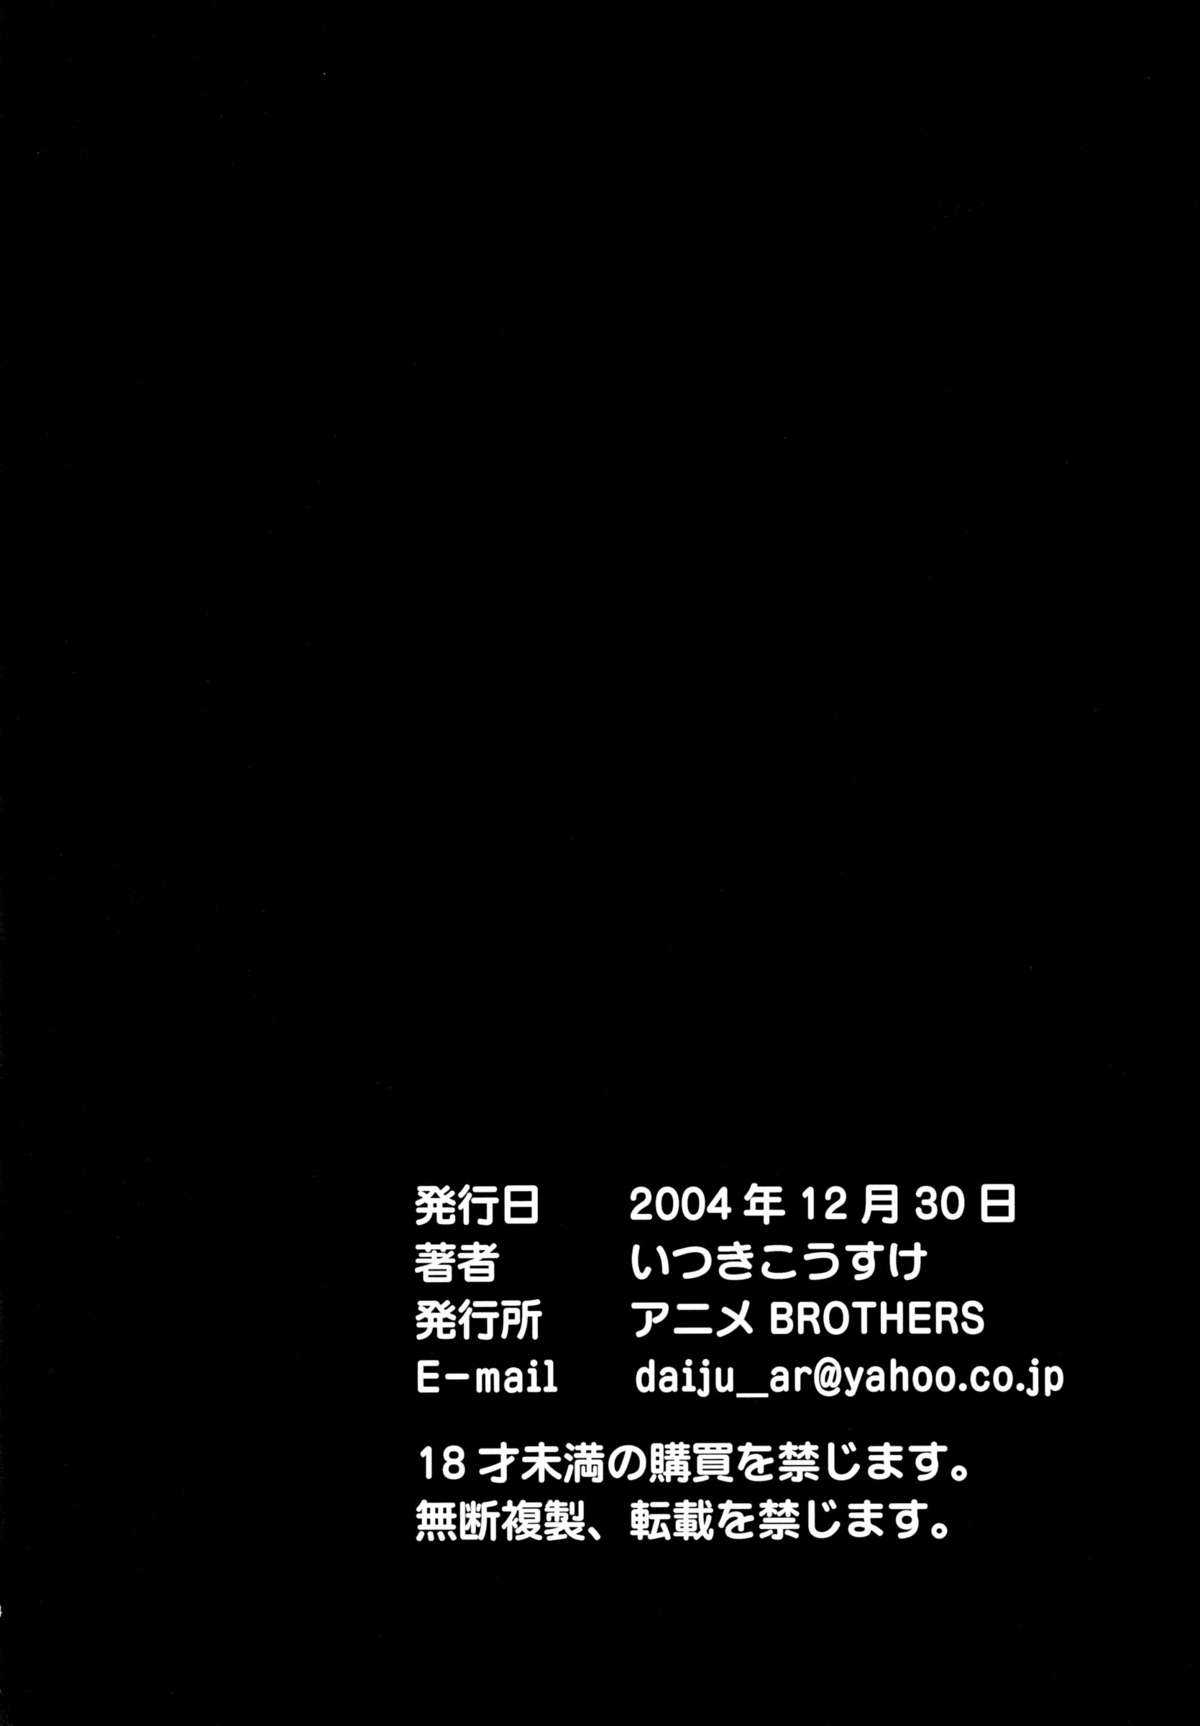 [Anime BROTHERS] PixelitA 03 [Chinese] (C67) (同人誌) [アニメBROTHERS] PixelitA 03 (オリジナル) [Genesis漢化]